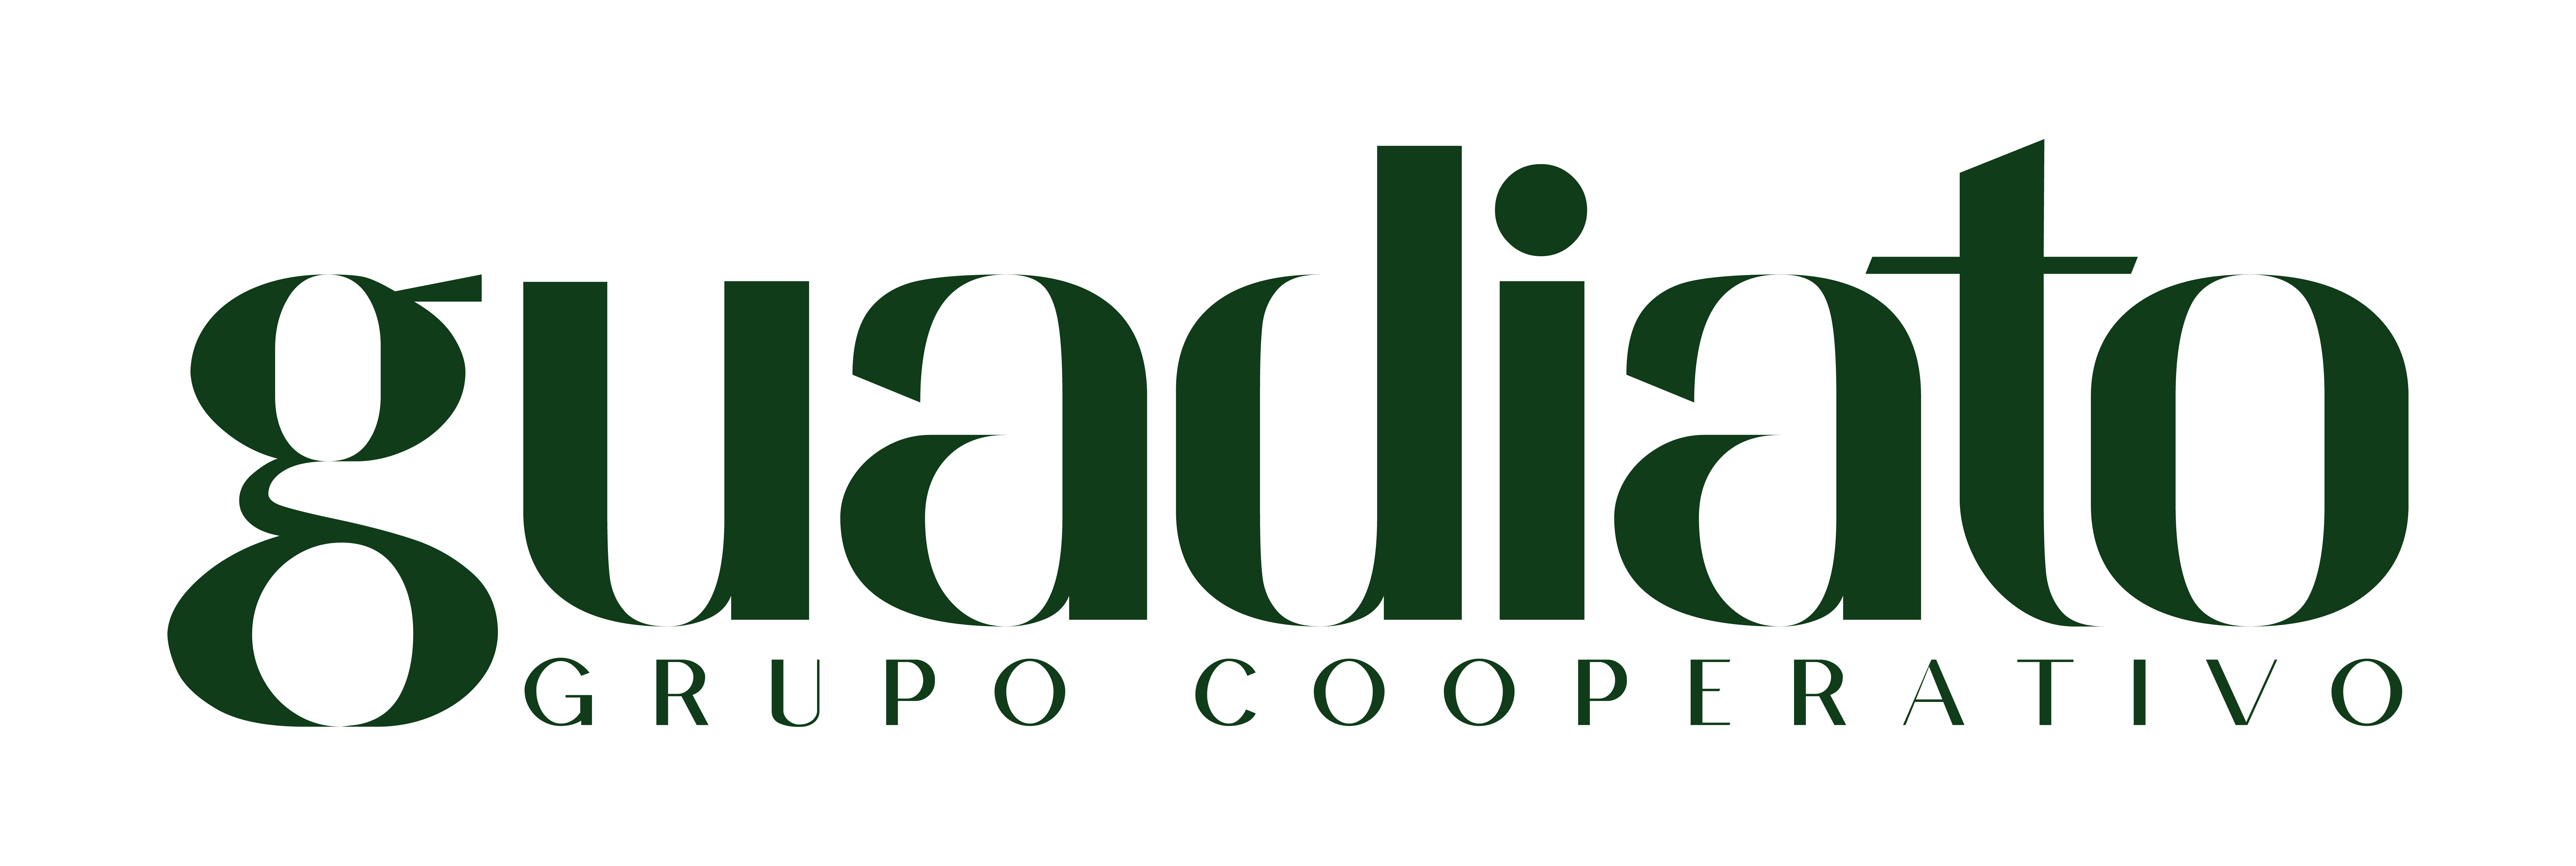 Logotipo grupo Guadiato